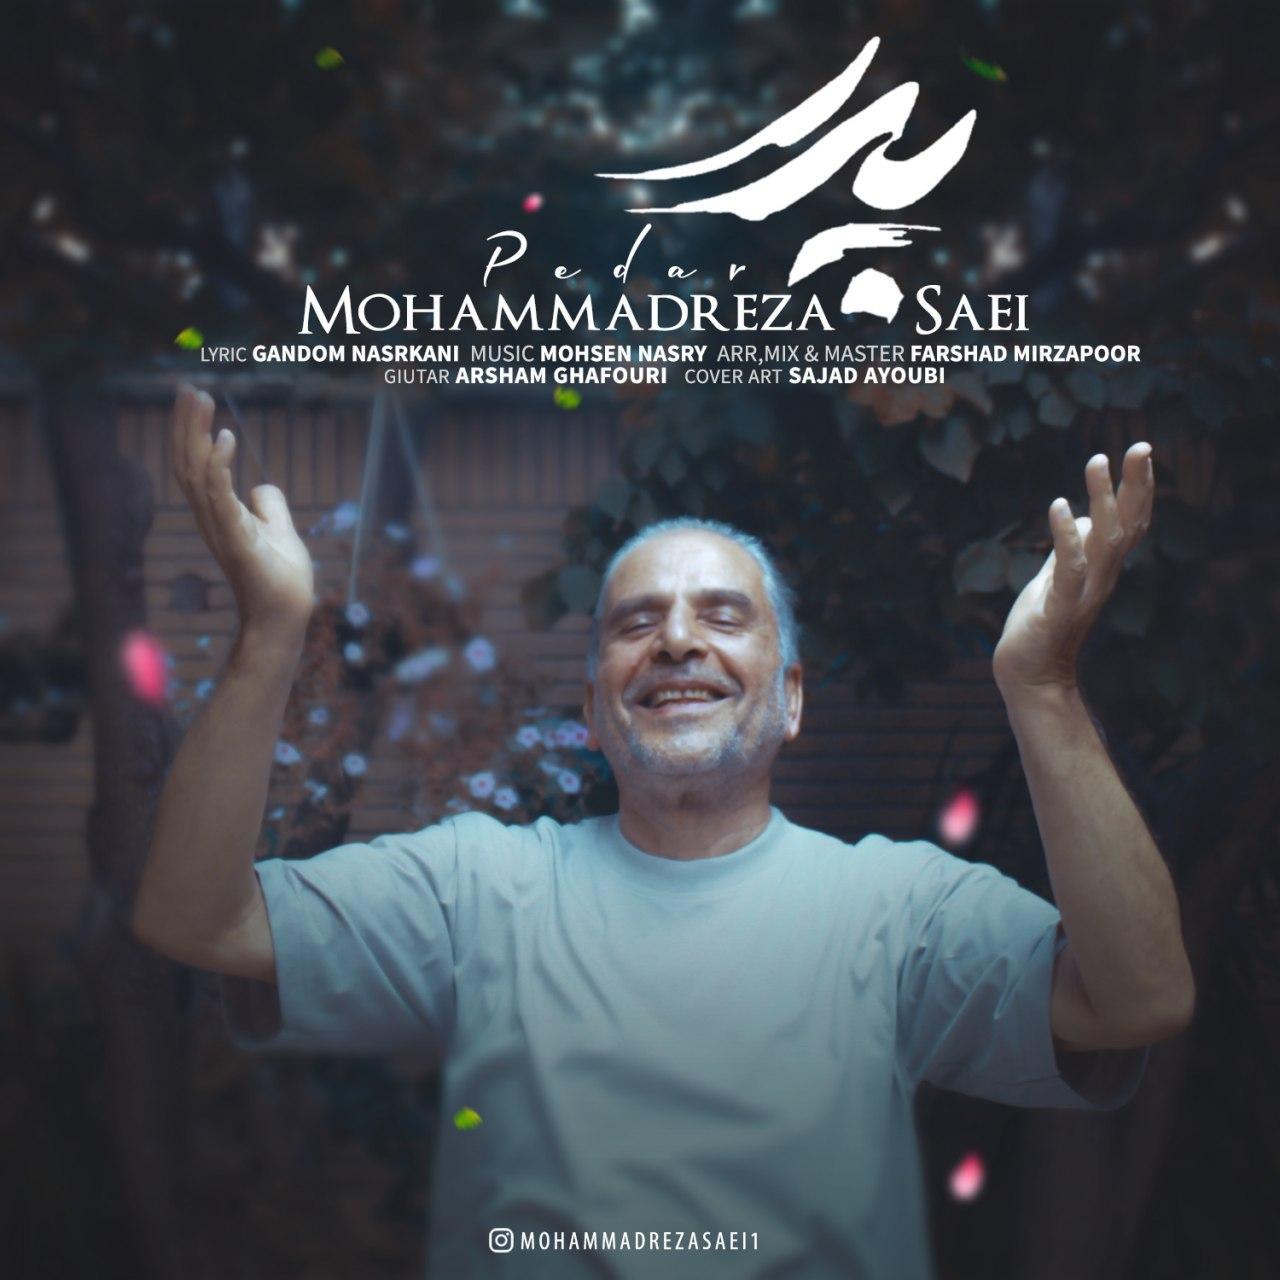 دانلود آهنگ جدید محمدرضا ساعی به نام پدر